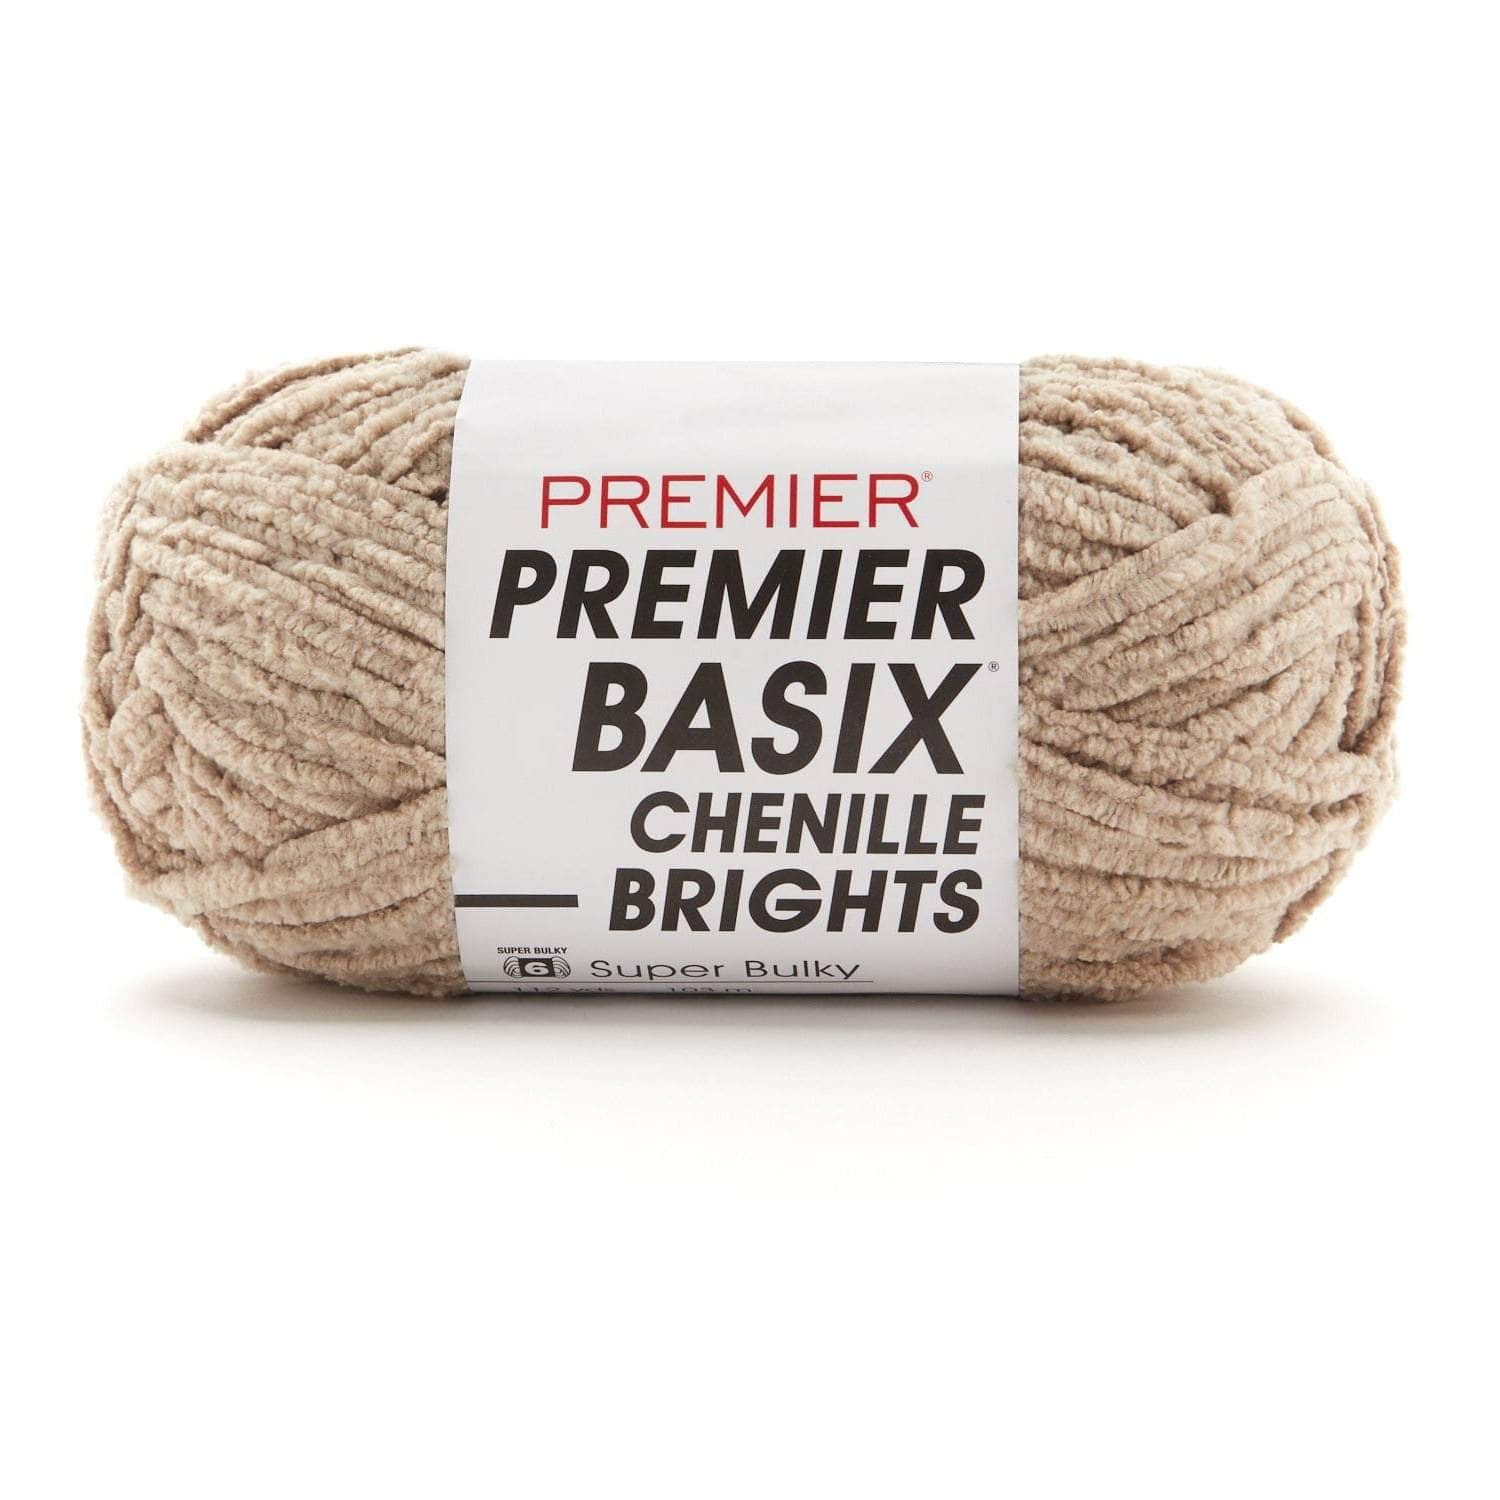 Premier Yarn Basix Chenille Brights Yarn - Light Blue